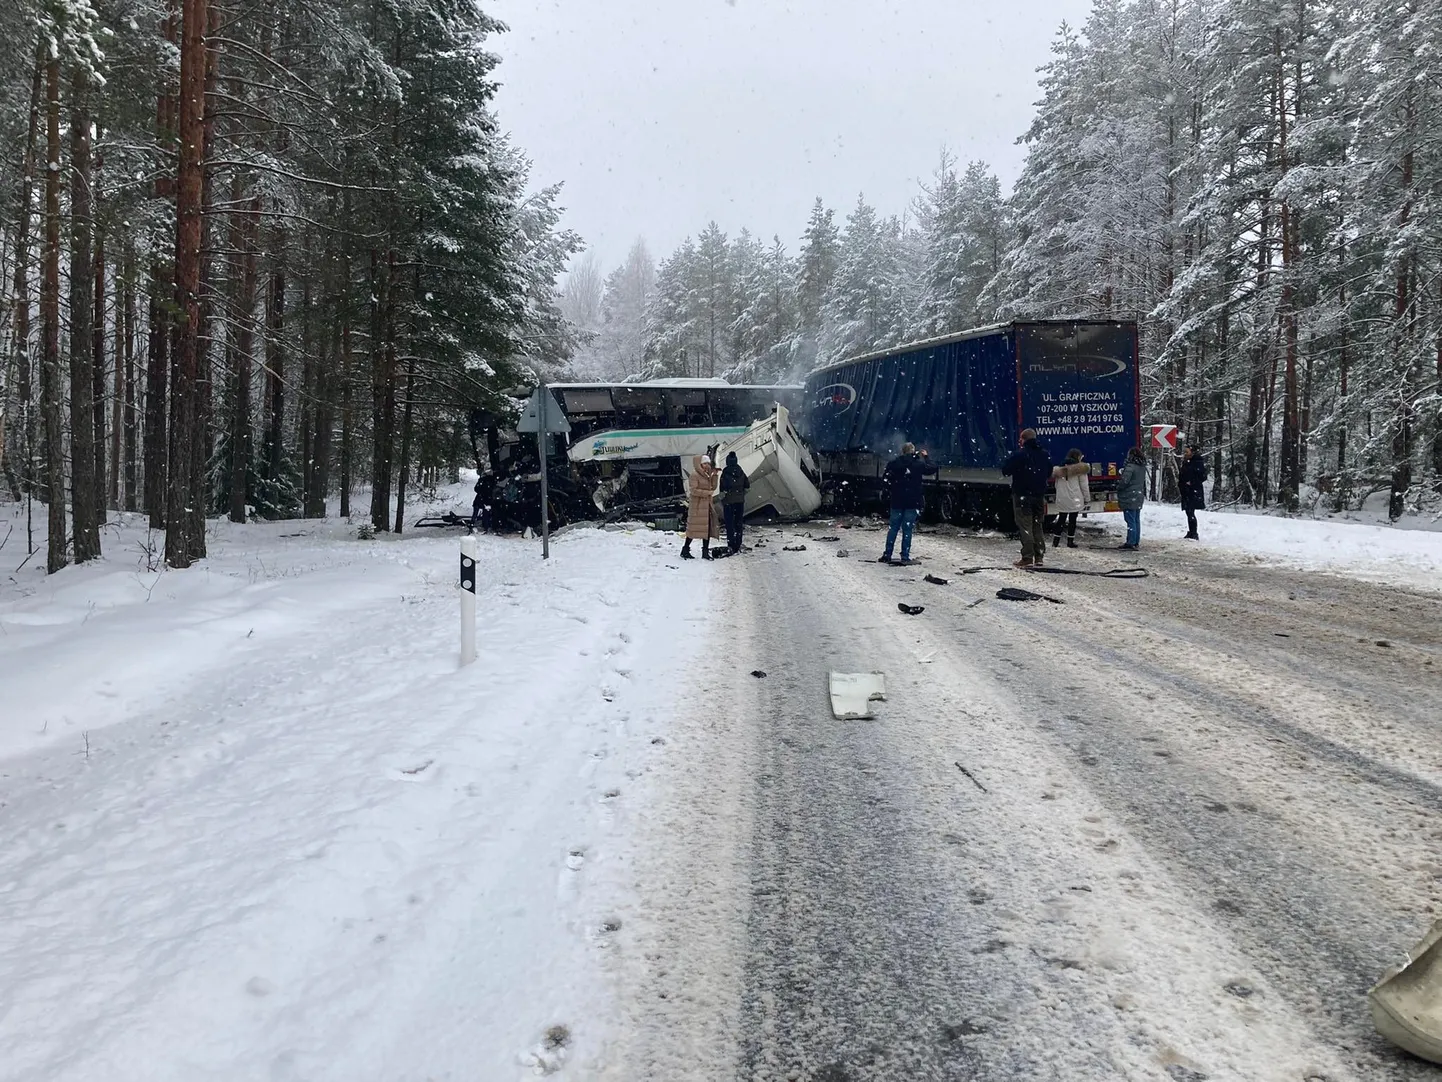 В результате столкновения автобуса и грузовика в Раннапунгерья водители обоих транспортных средств получили тяжелые травмы.